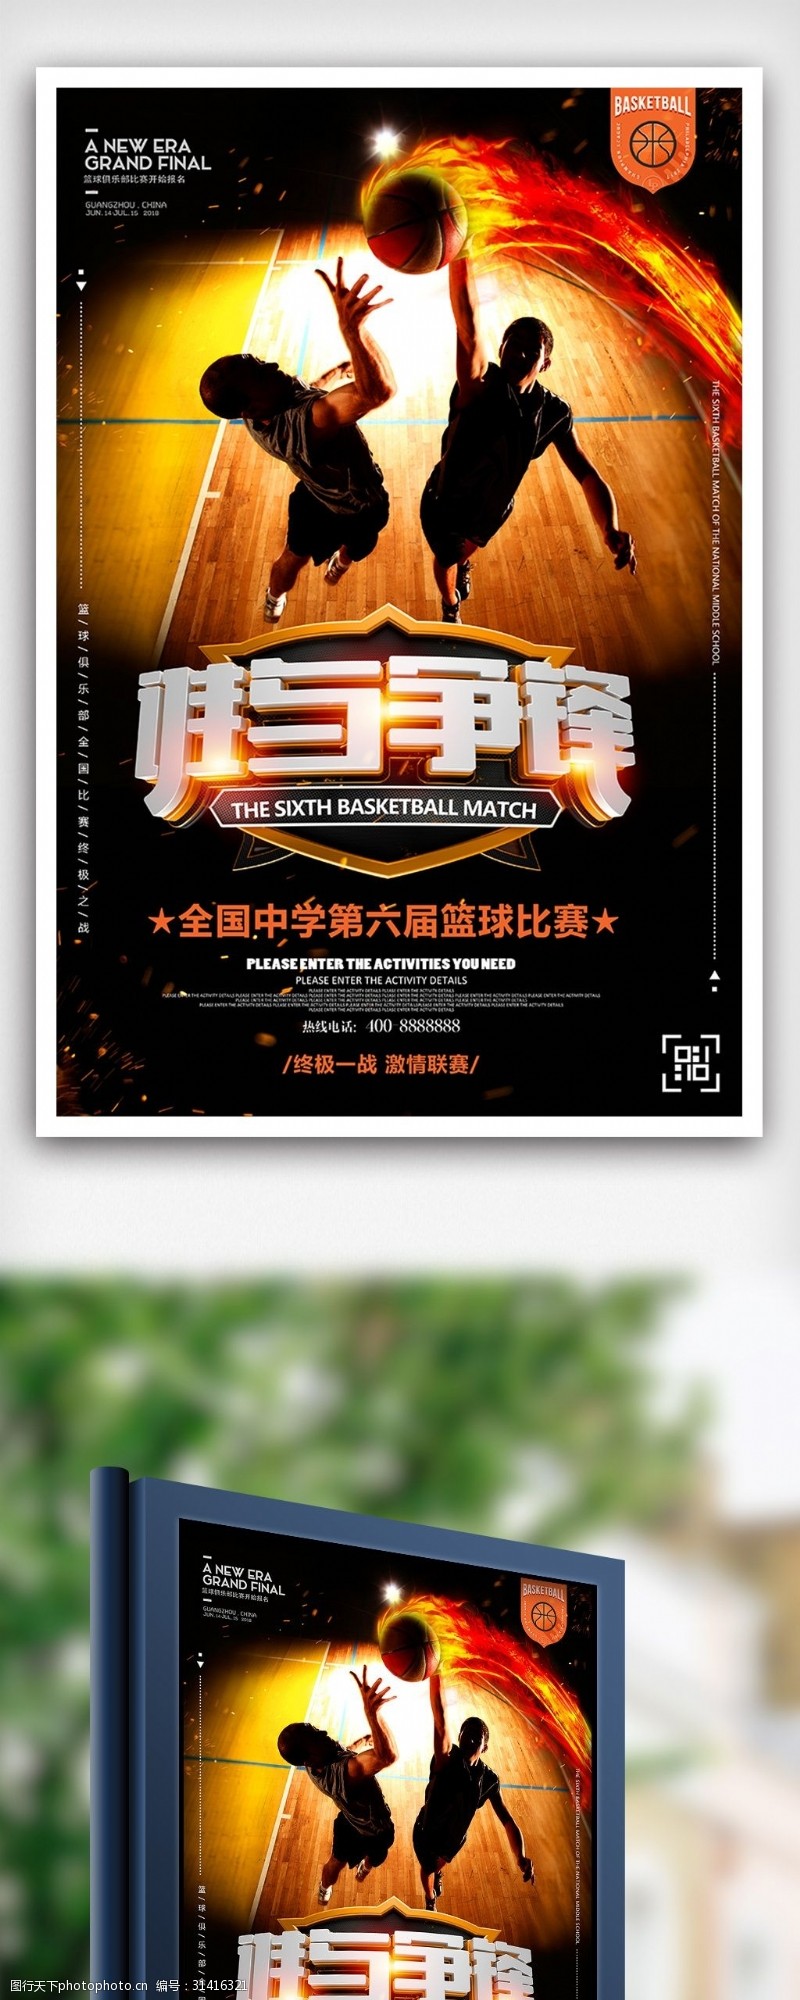 淘宝海报免费下载黑色炫酷篮球比赛宣传海报设计